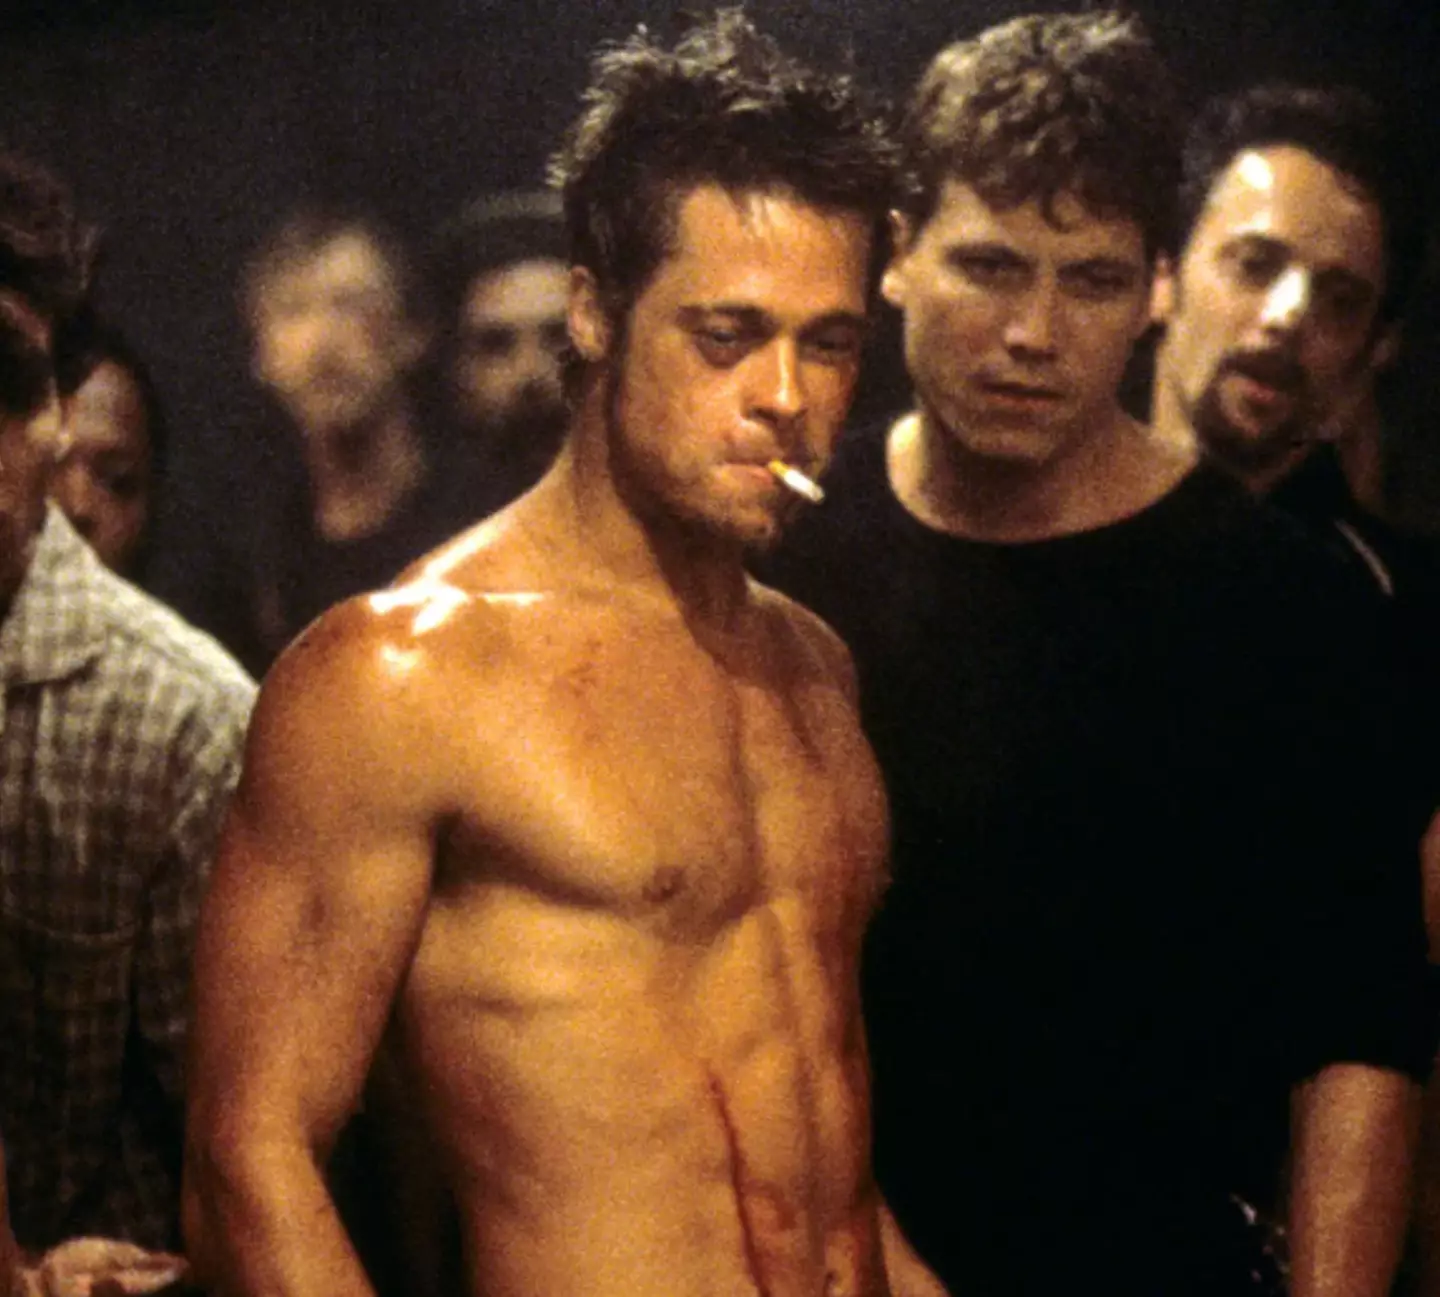 Brad Pitt plays Tyler Durden, The Narrator's alter-ego, in the hit film.